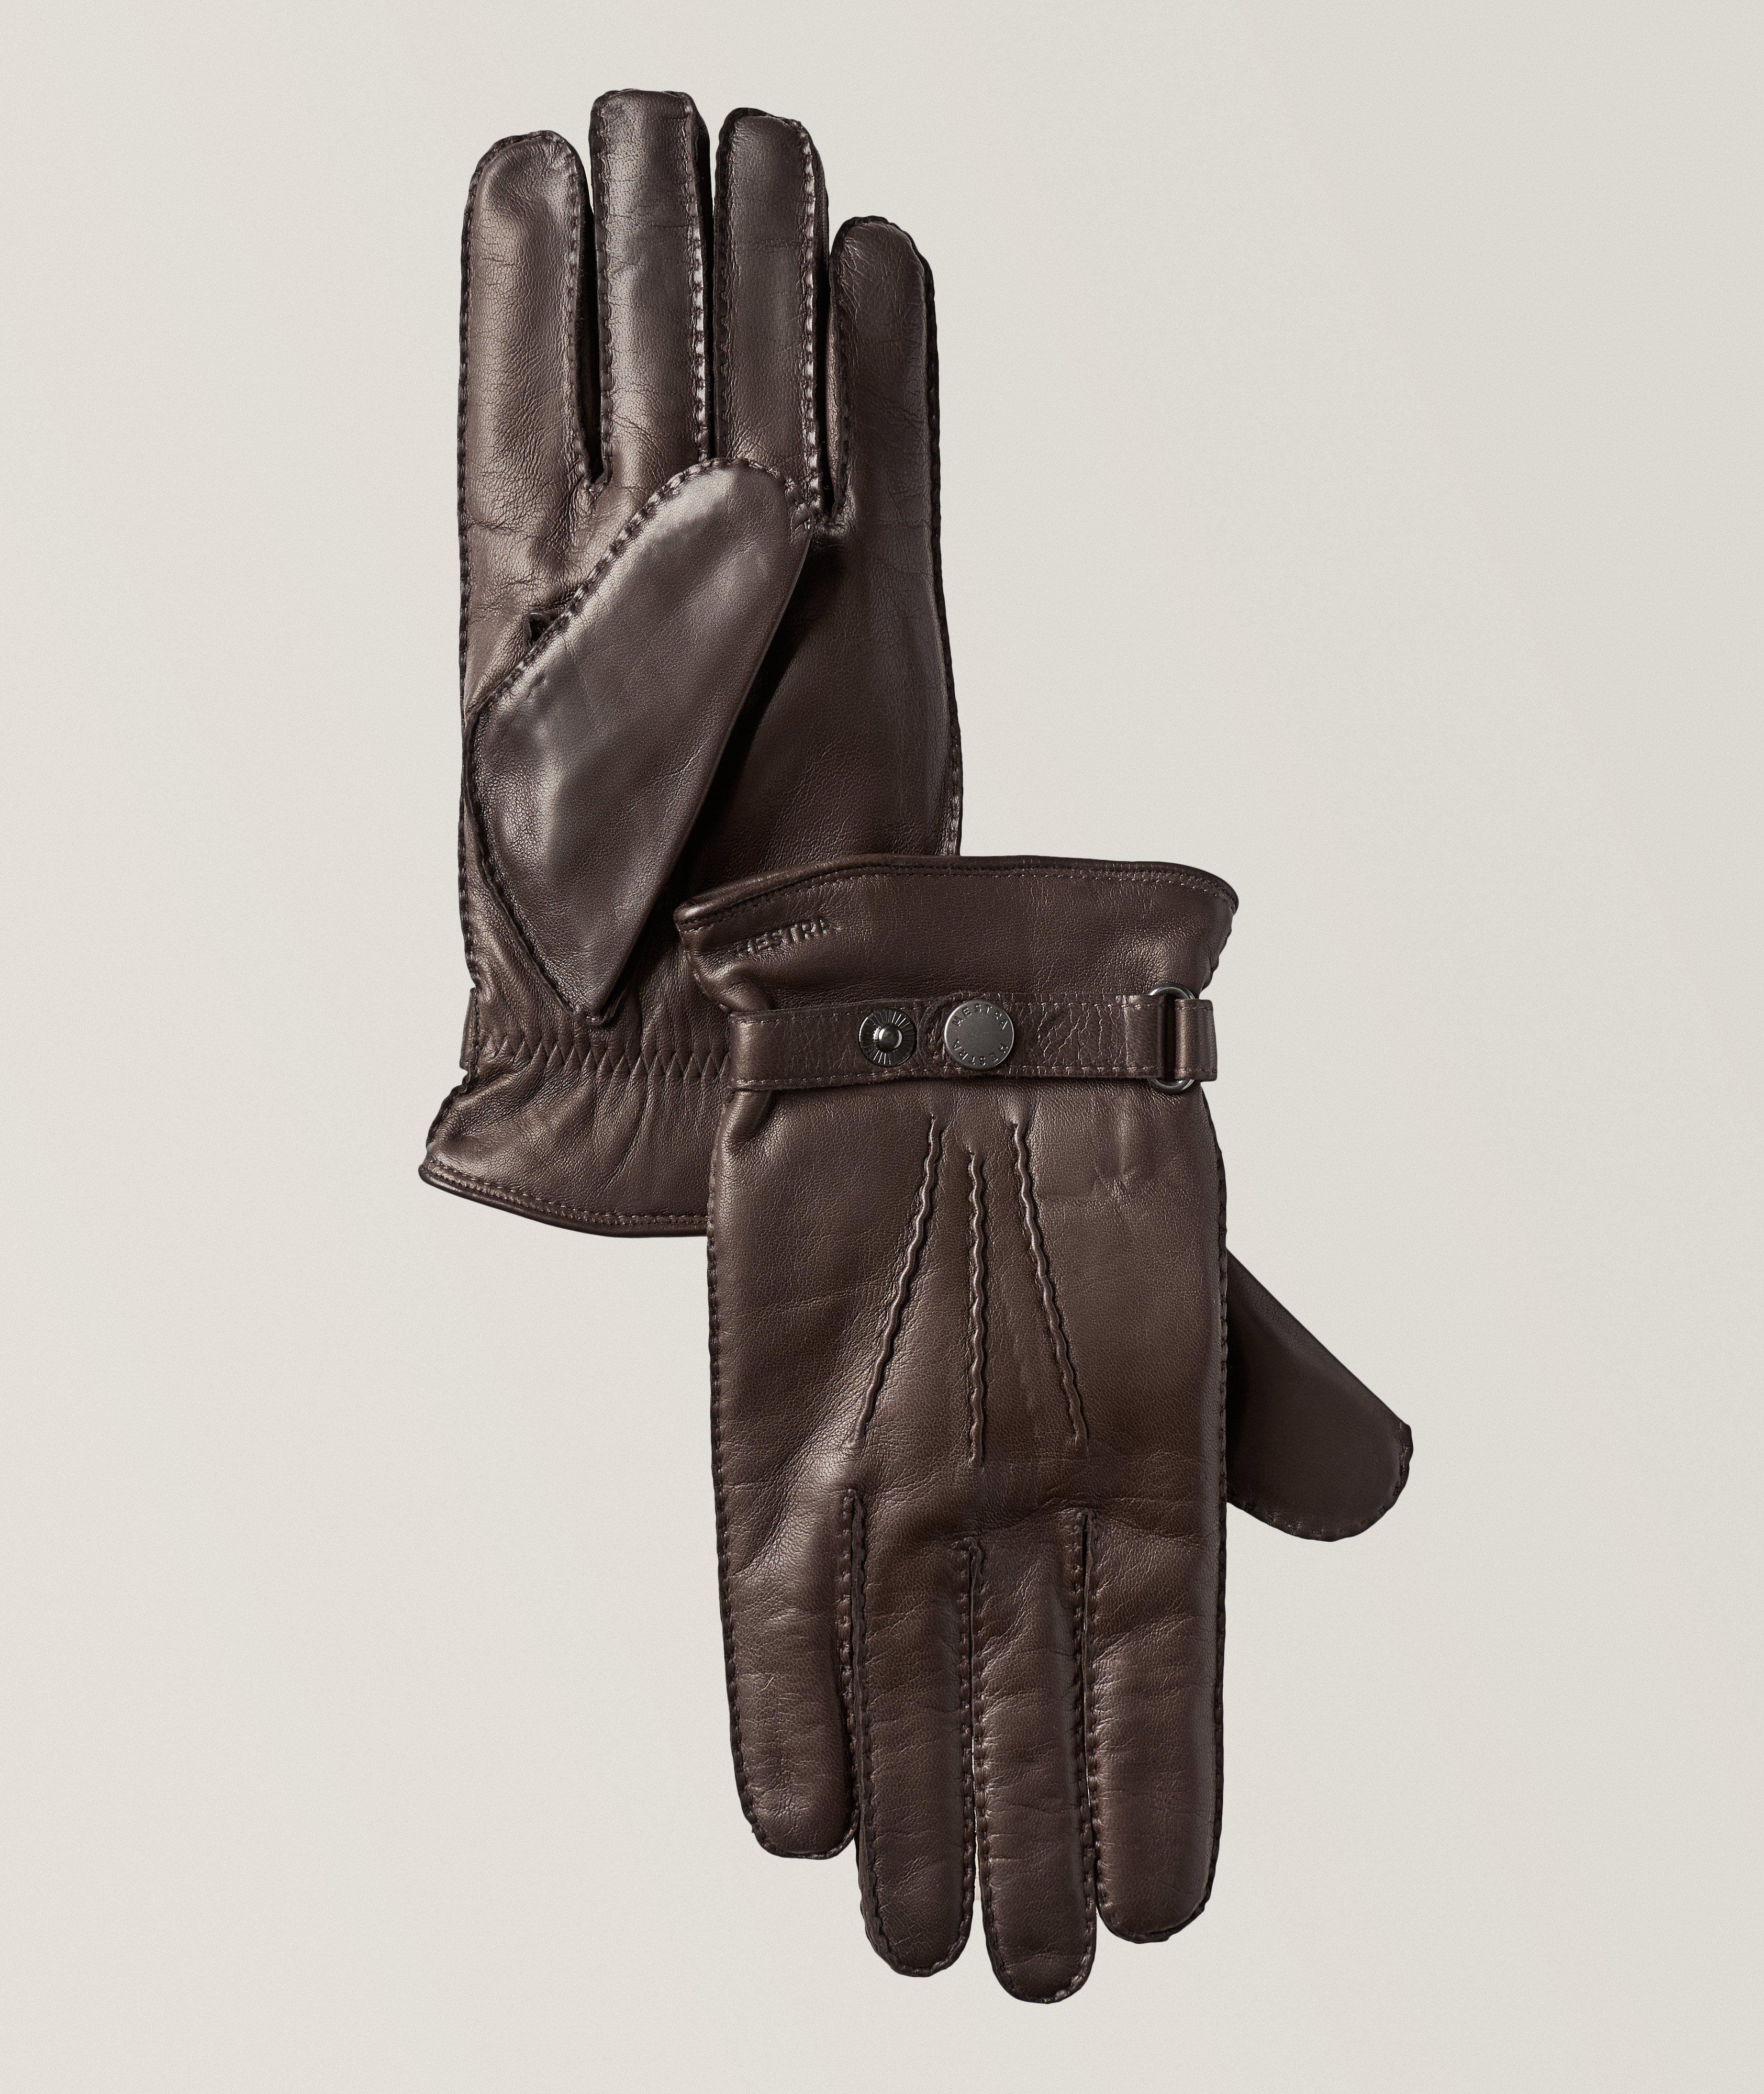 Jake Lamb Leather Gloves  image 0